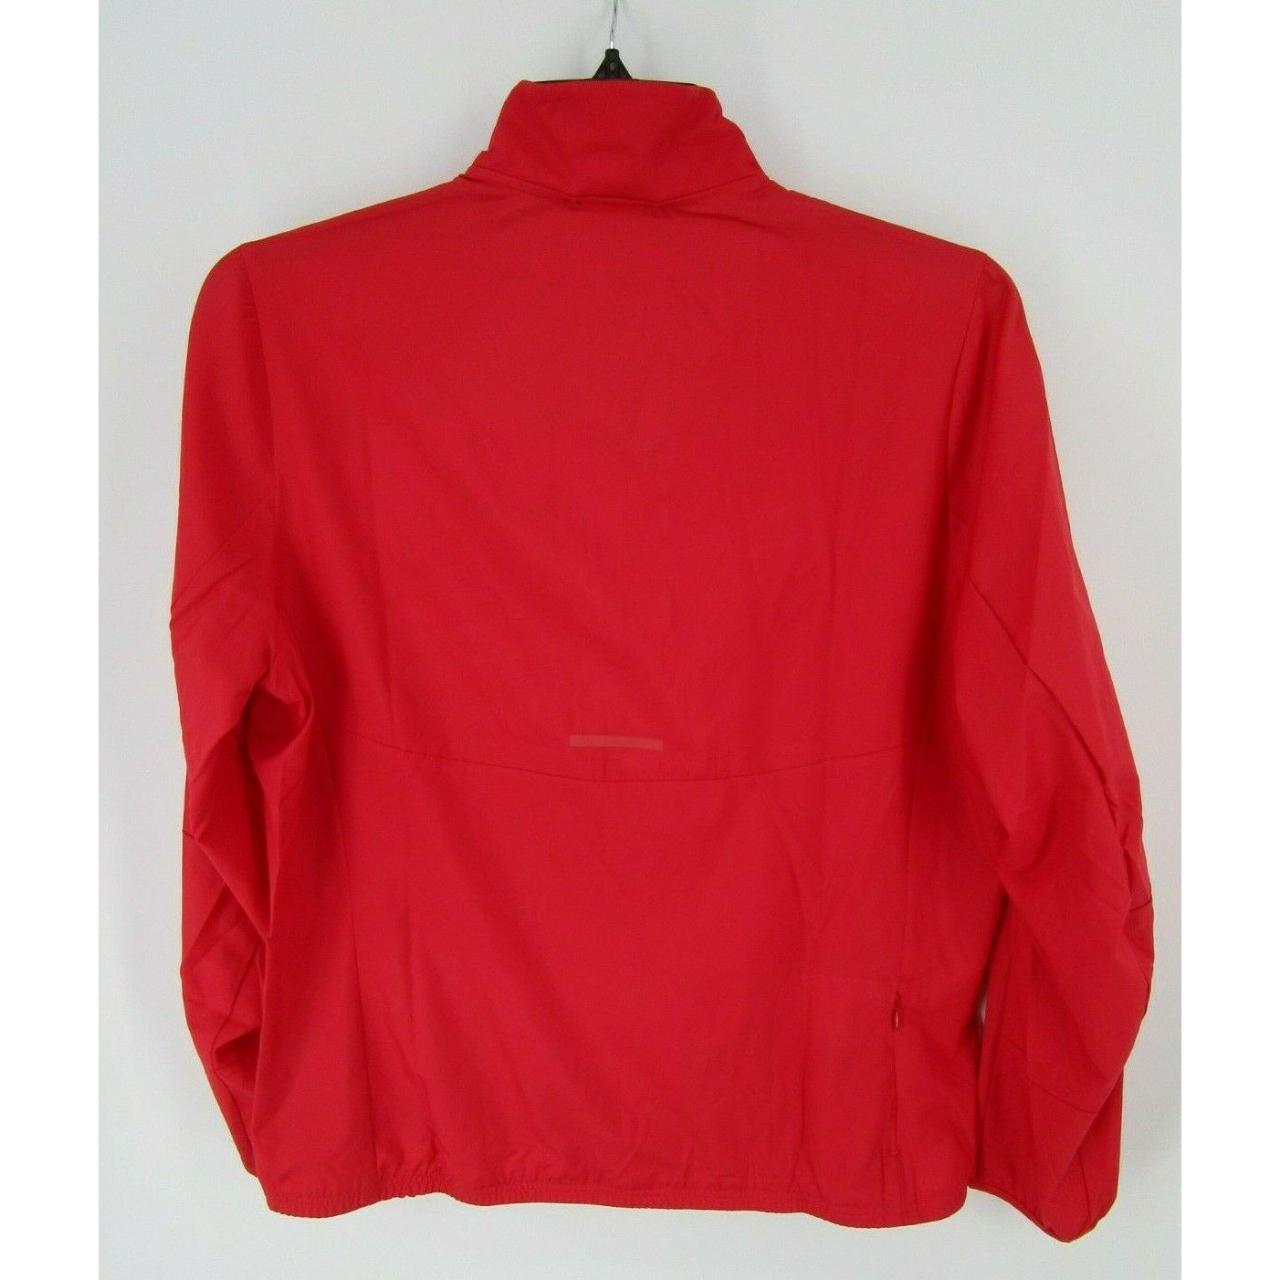 Product Image 2 - Adidas Jacket Women Large Red